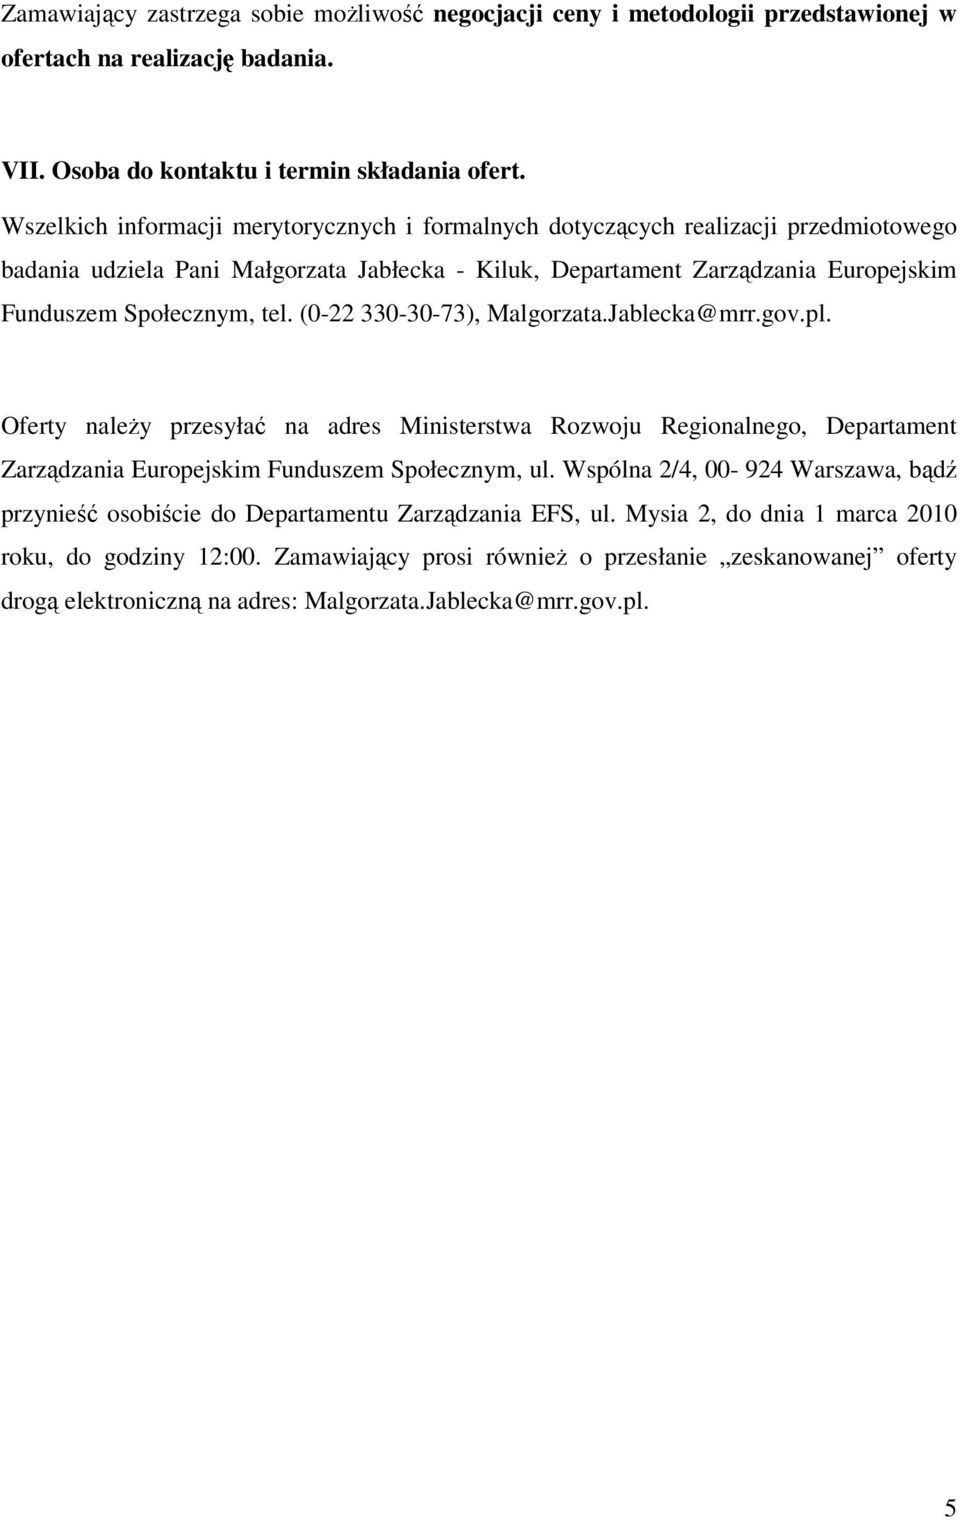 (0-22 330-30-73), Malgorzata.Jablecka@mrr.gov.pl. Oferty naleŝy przesyłać na adres Ministerstwa Rozwoju Regionalnego, Departament Zarządzania Europejskim Funduszem Społecznym, ul.